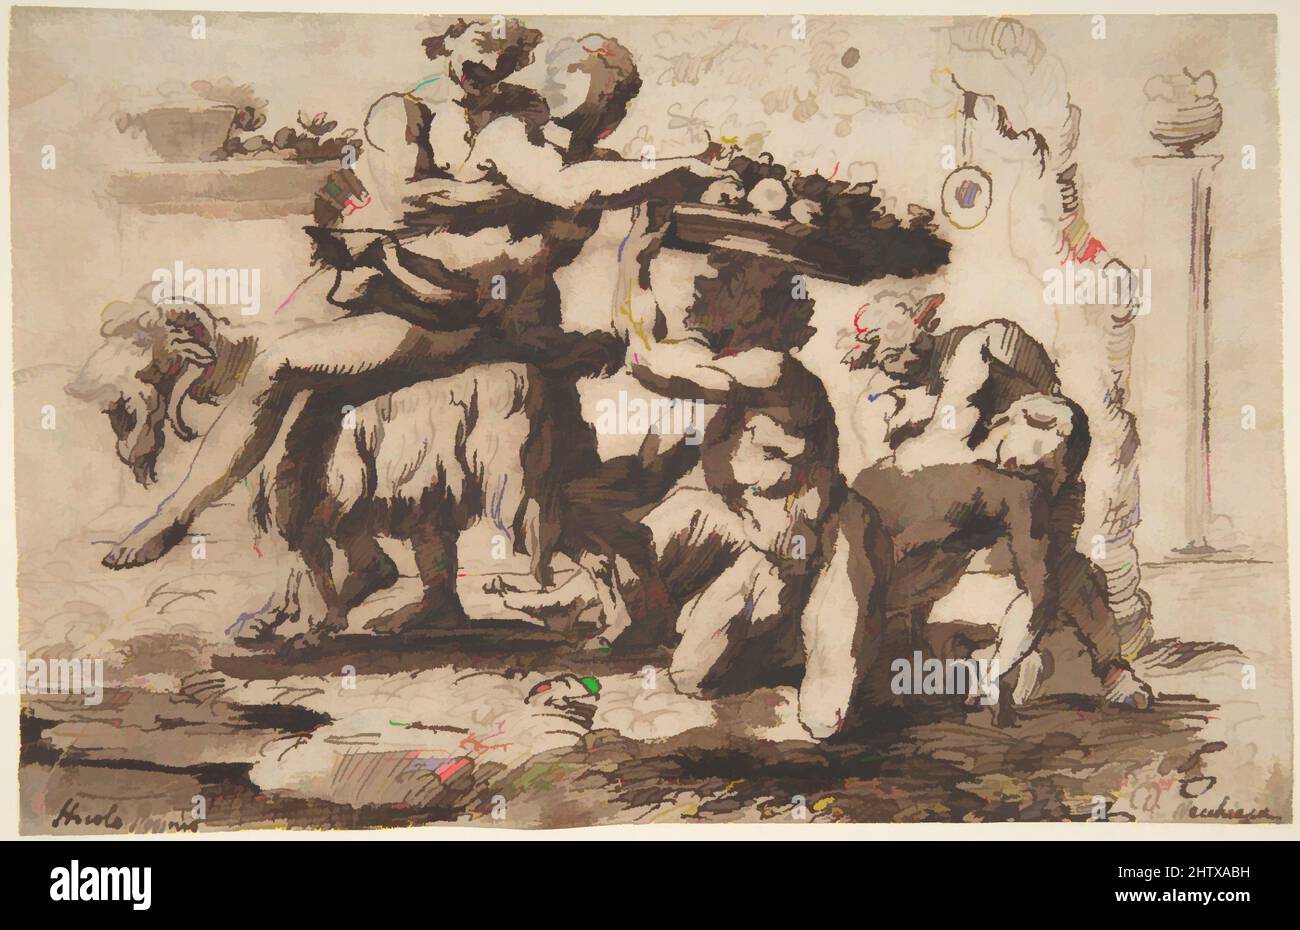 Kunst inspiriert von Bacchanal, ca. 1635–36, Stift und braune Tinte, Pinsel und braune Wäsche, über schwach schwarzer Kreideunterzeichnung, 5 1/4 x 8 1/8 Zoll (13,3 x 20,6 cm.), Zeichnungen, Nicolas Poussin (französisch, Les Andelys 1594–1665 Rom), Obwohl er den größten Teil seiner Karriere in Rom verbrachte, war Poussin, klassische Werke, die von Artotop mit einem Schuss Moderne modernisiert wurden. Formen, Farbe und Wert, auffällige visuelle Wirkung auf Kunst. Emotionen durch Freiheit von Kunstwerken auf zeitgemäße Weise. Eine zeitlose Botschaft, die eine wild kreative neue Richtung verfolgt. Künstler, die sich dem digitalen Medium zuwenden und die Artotop NFT erschaffen Stockfoto